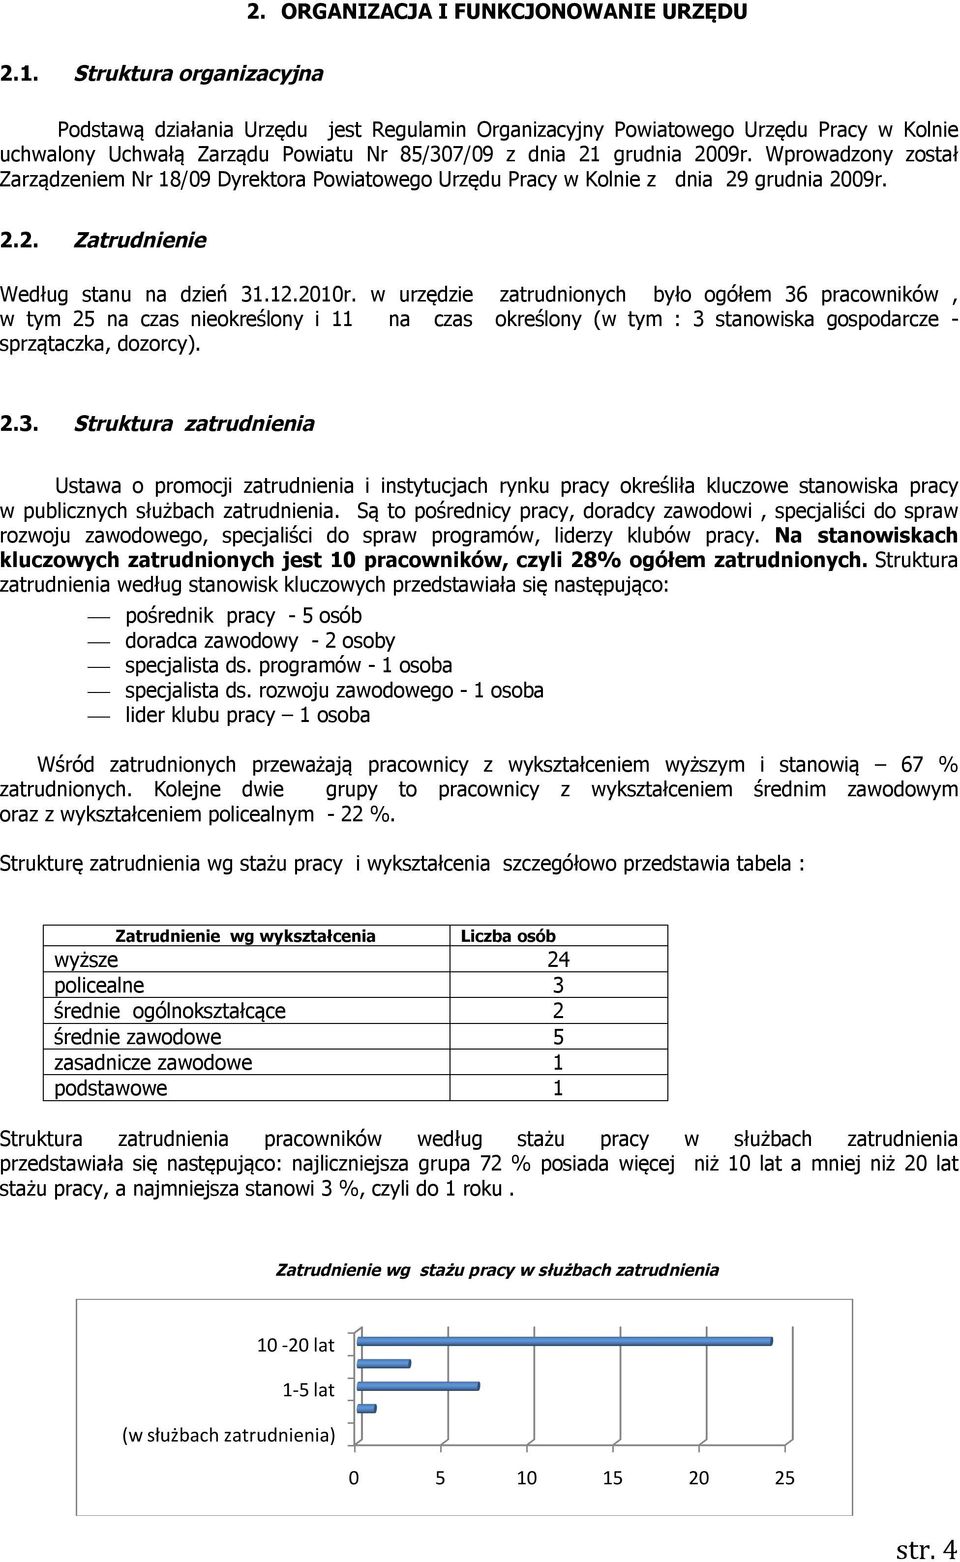 Wprowadzony został Zarządzeniem Nr 18/09 Dyrektora Powiatowego Urzędu Pracy w Kolnie z dnia 29 grudnia 2009r. 2.2. Zatrudnienie Według stanu na dzień 31.12.2010r.